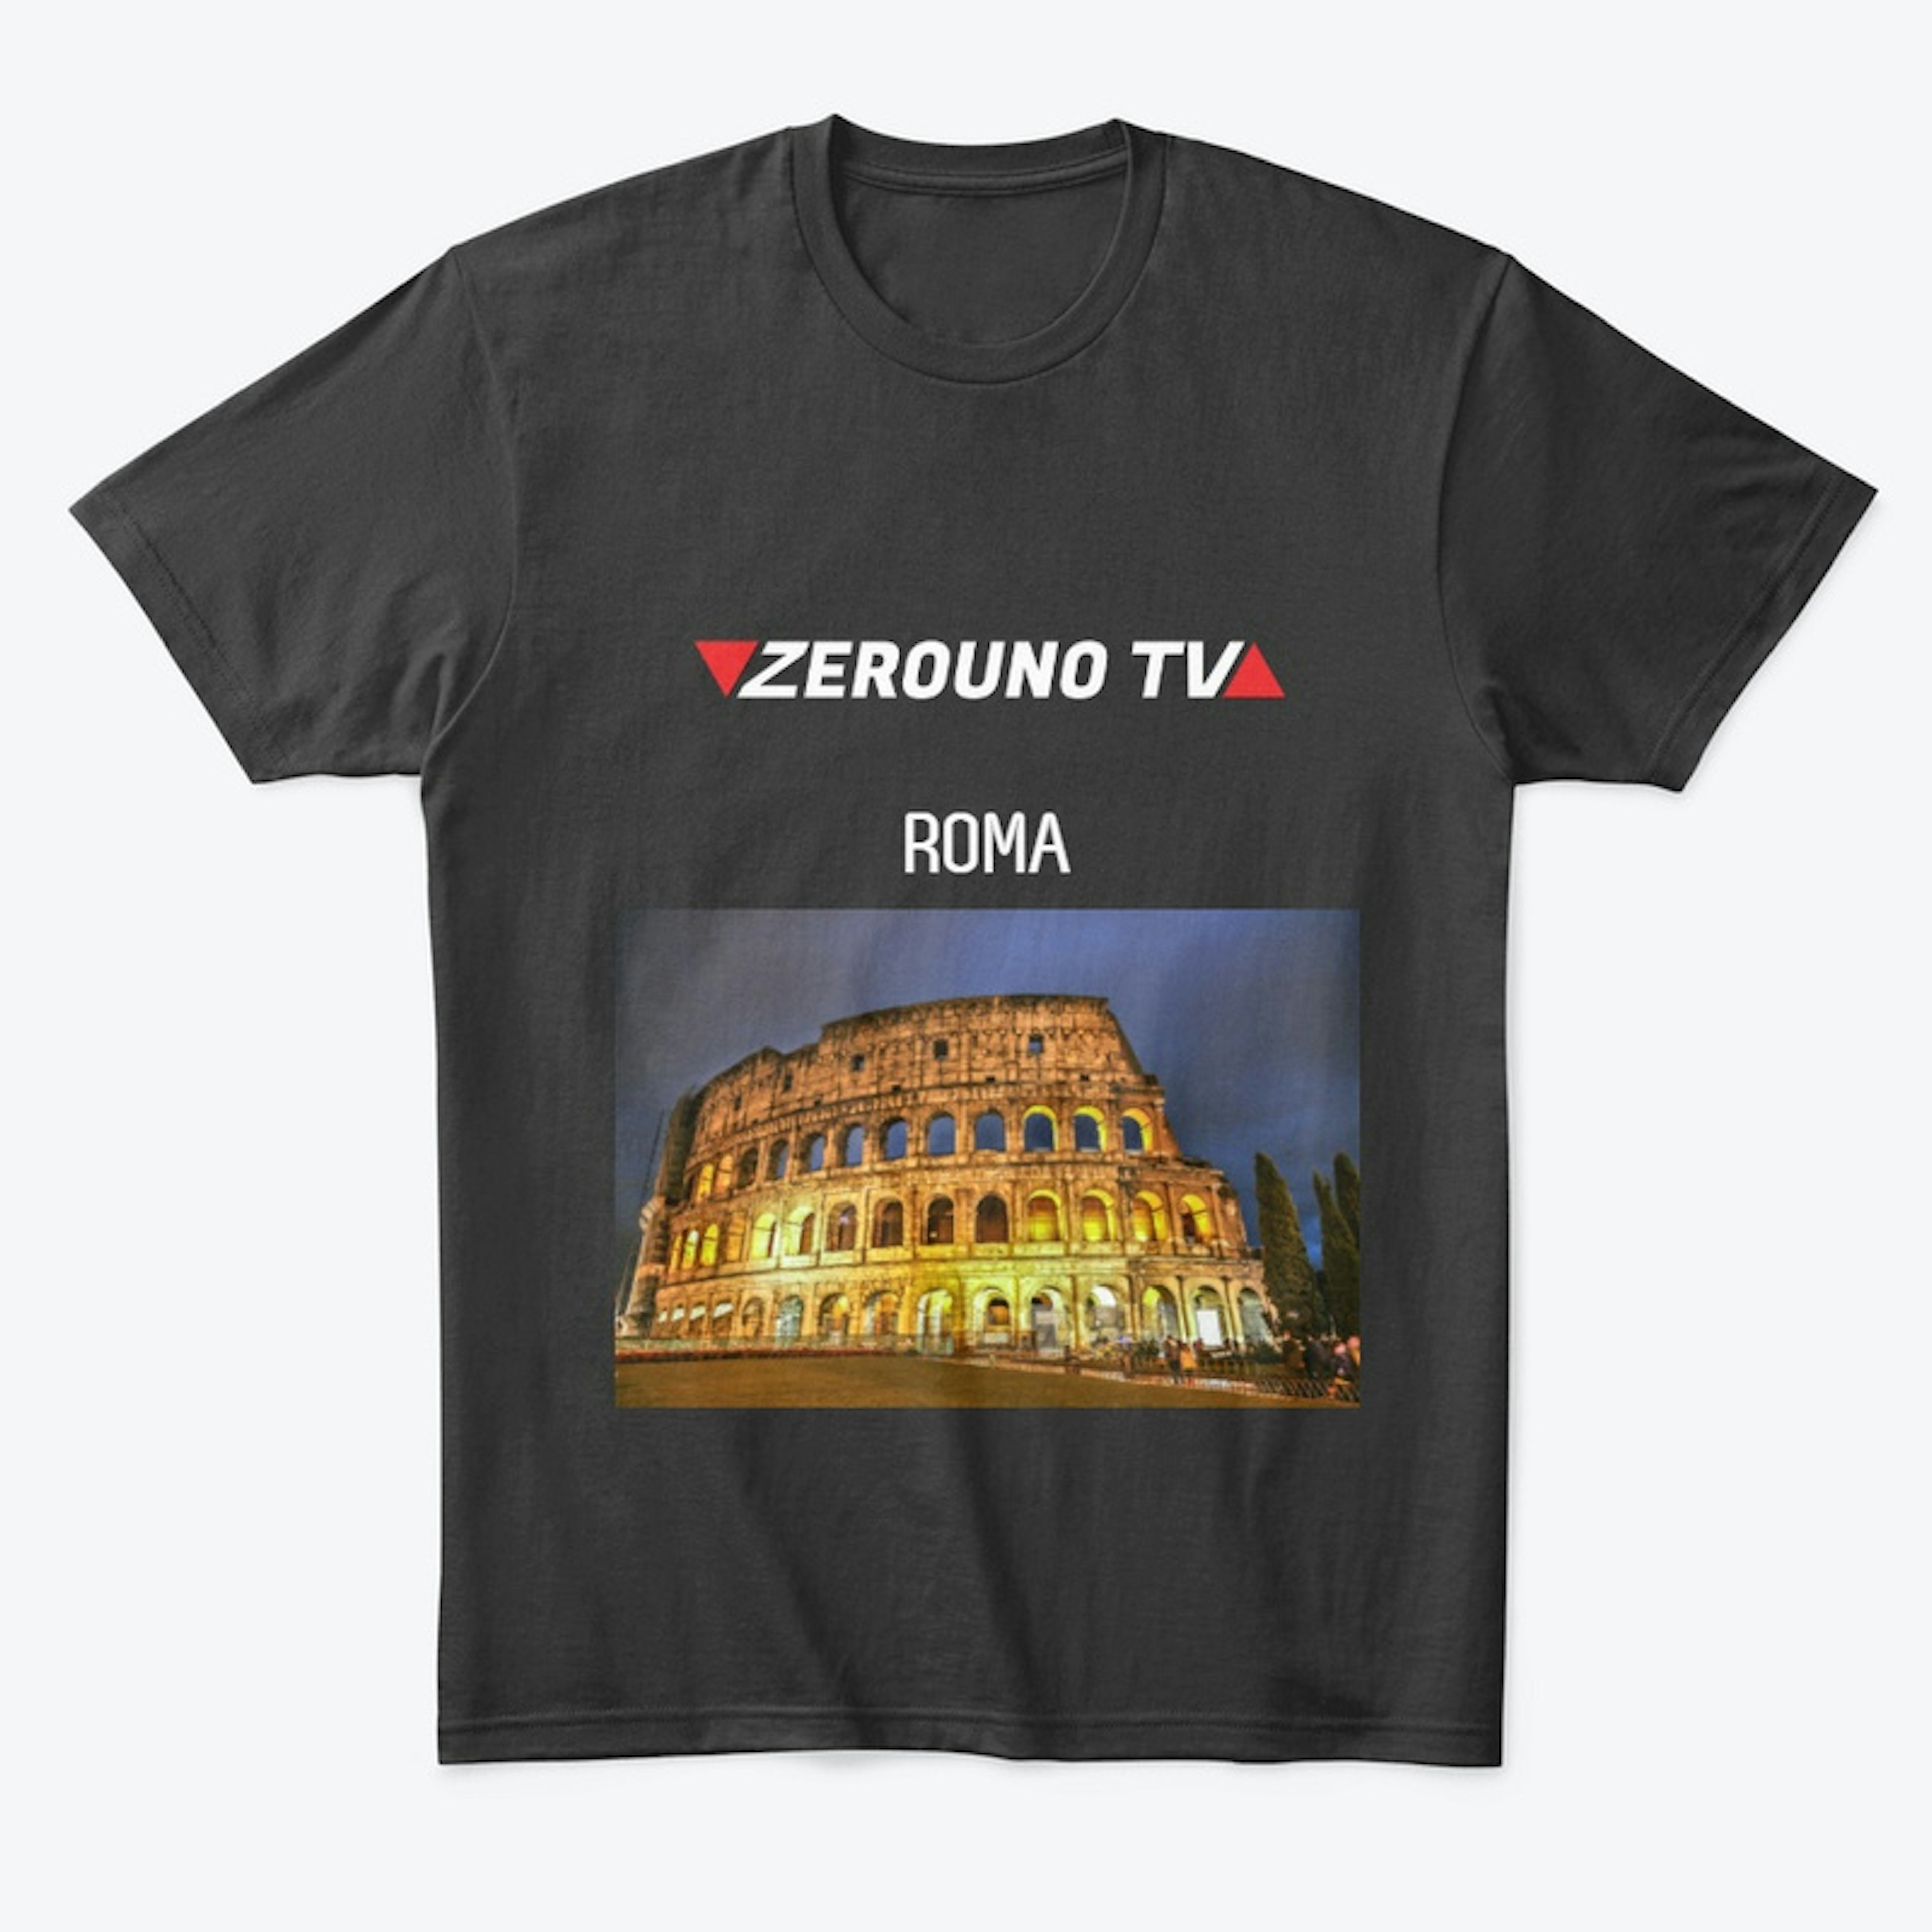 Zerouno TV Roma